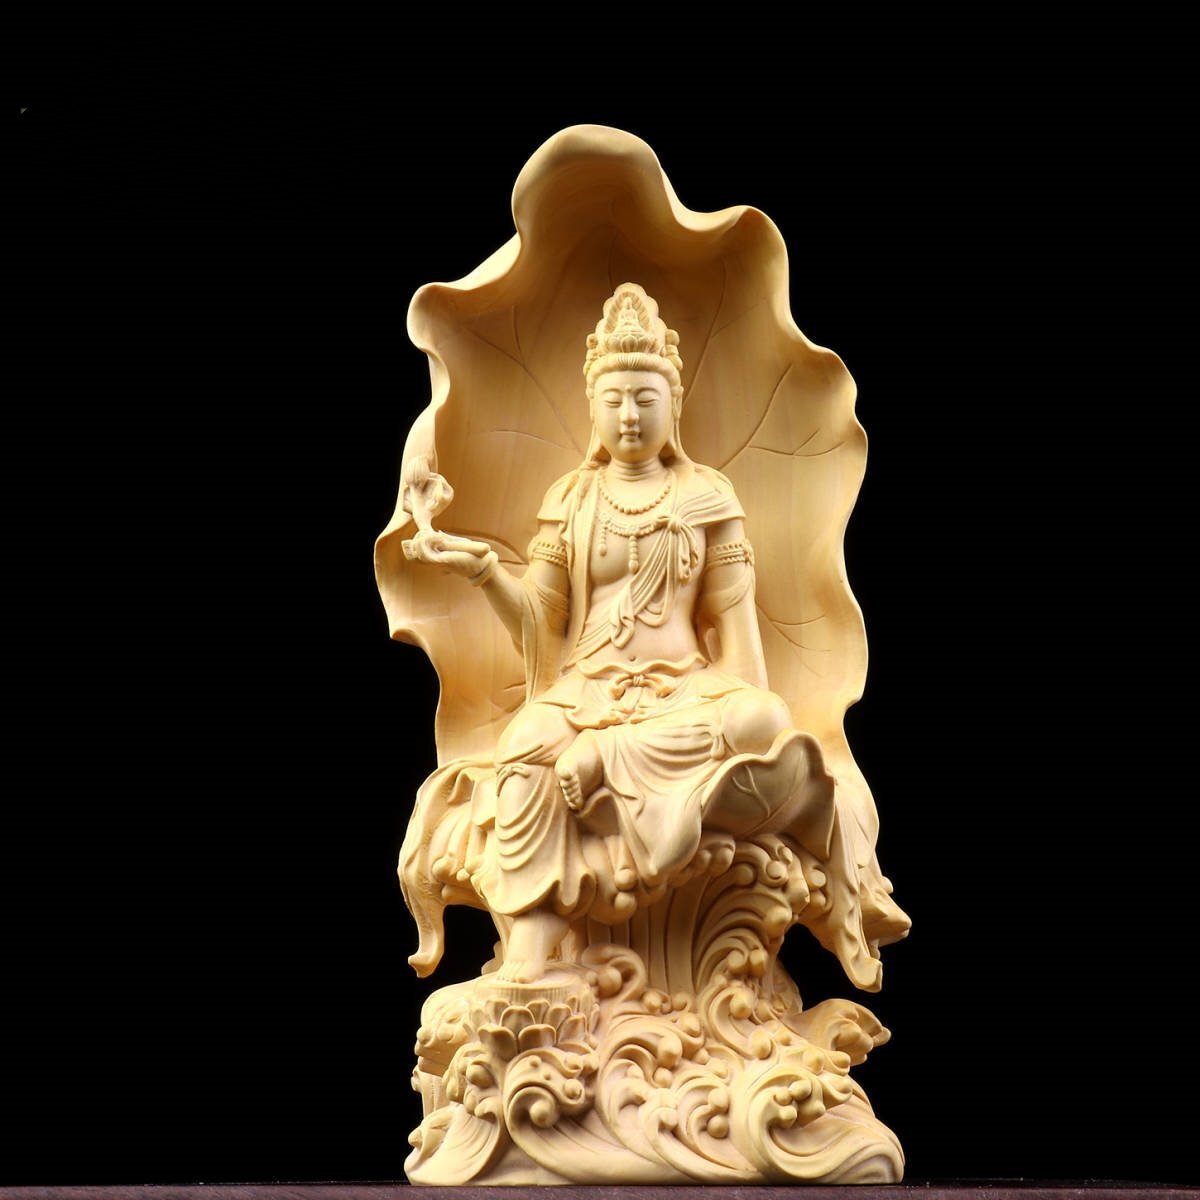 木彫仏像 自在観音菩薩 仏師彫り 招財開運 仏教工芸品 精密彫刻 高さ18cm